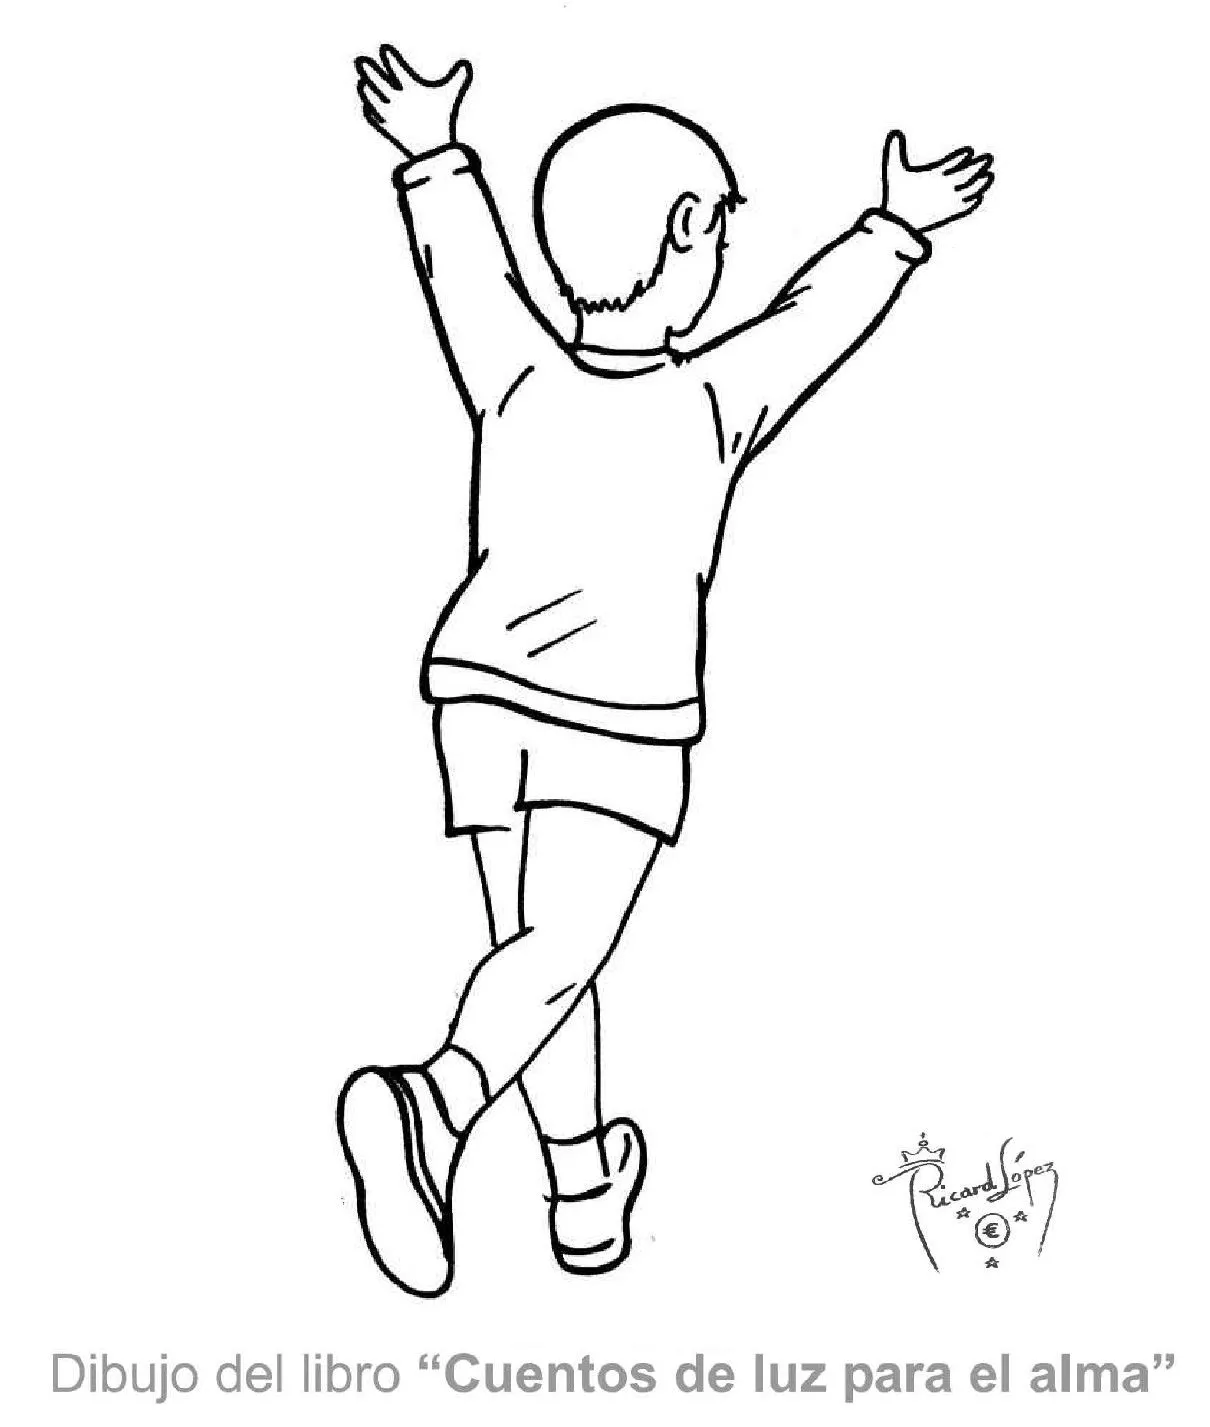 Dibujos muy originales para colorear: Dibujo de un niño corriendo